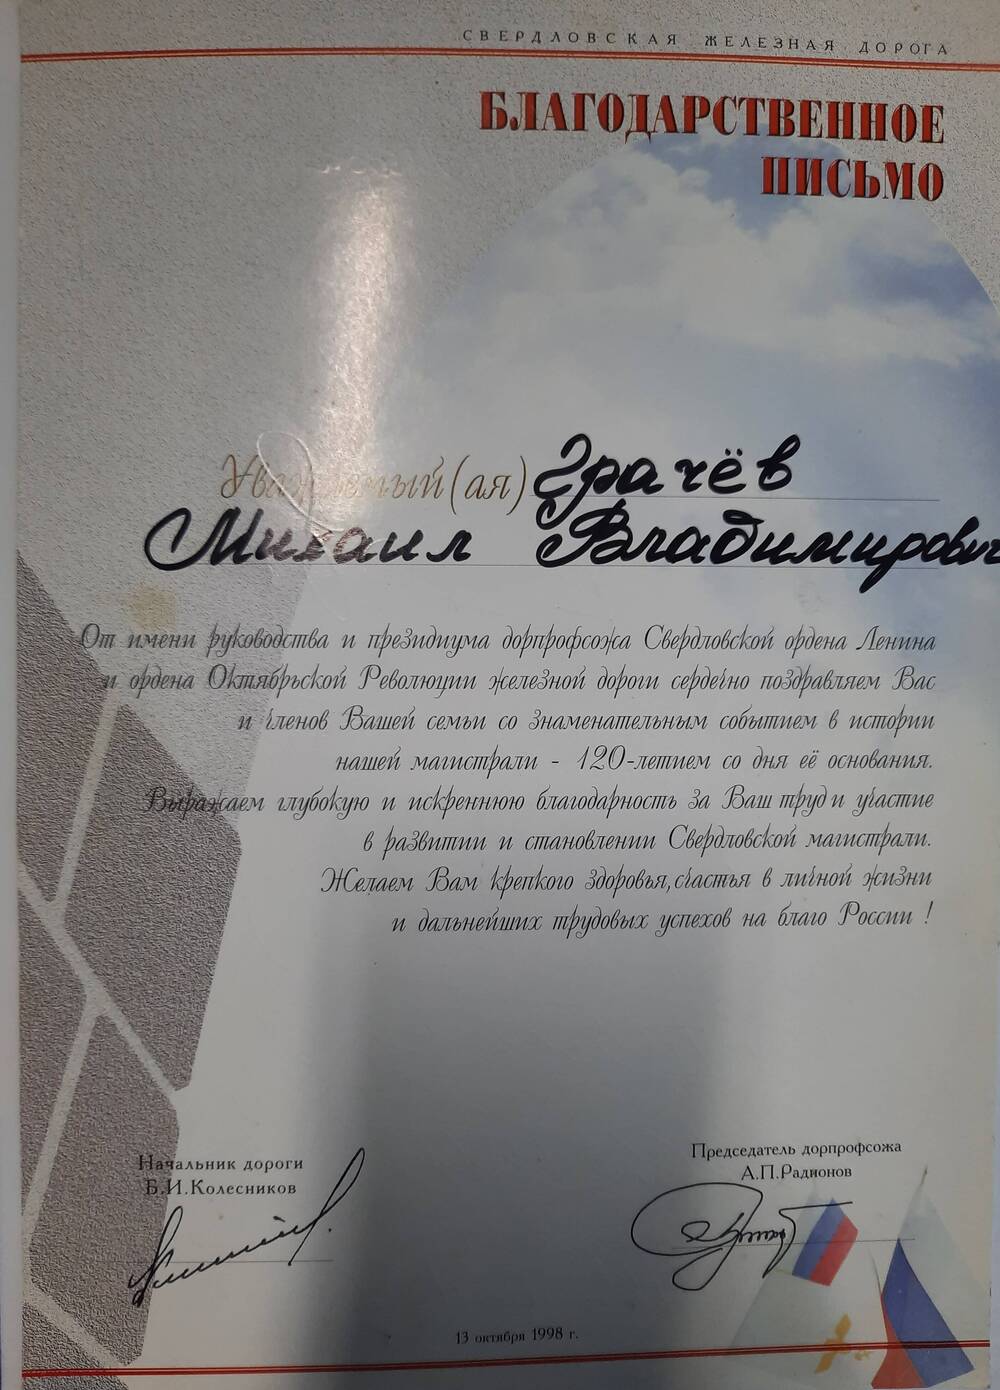 Письмо благодарственное Грачева Михаила Владимировича, рабочего Свердловской железной дороги к 120-летию основания железной дороги.